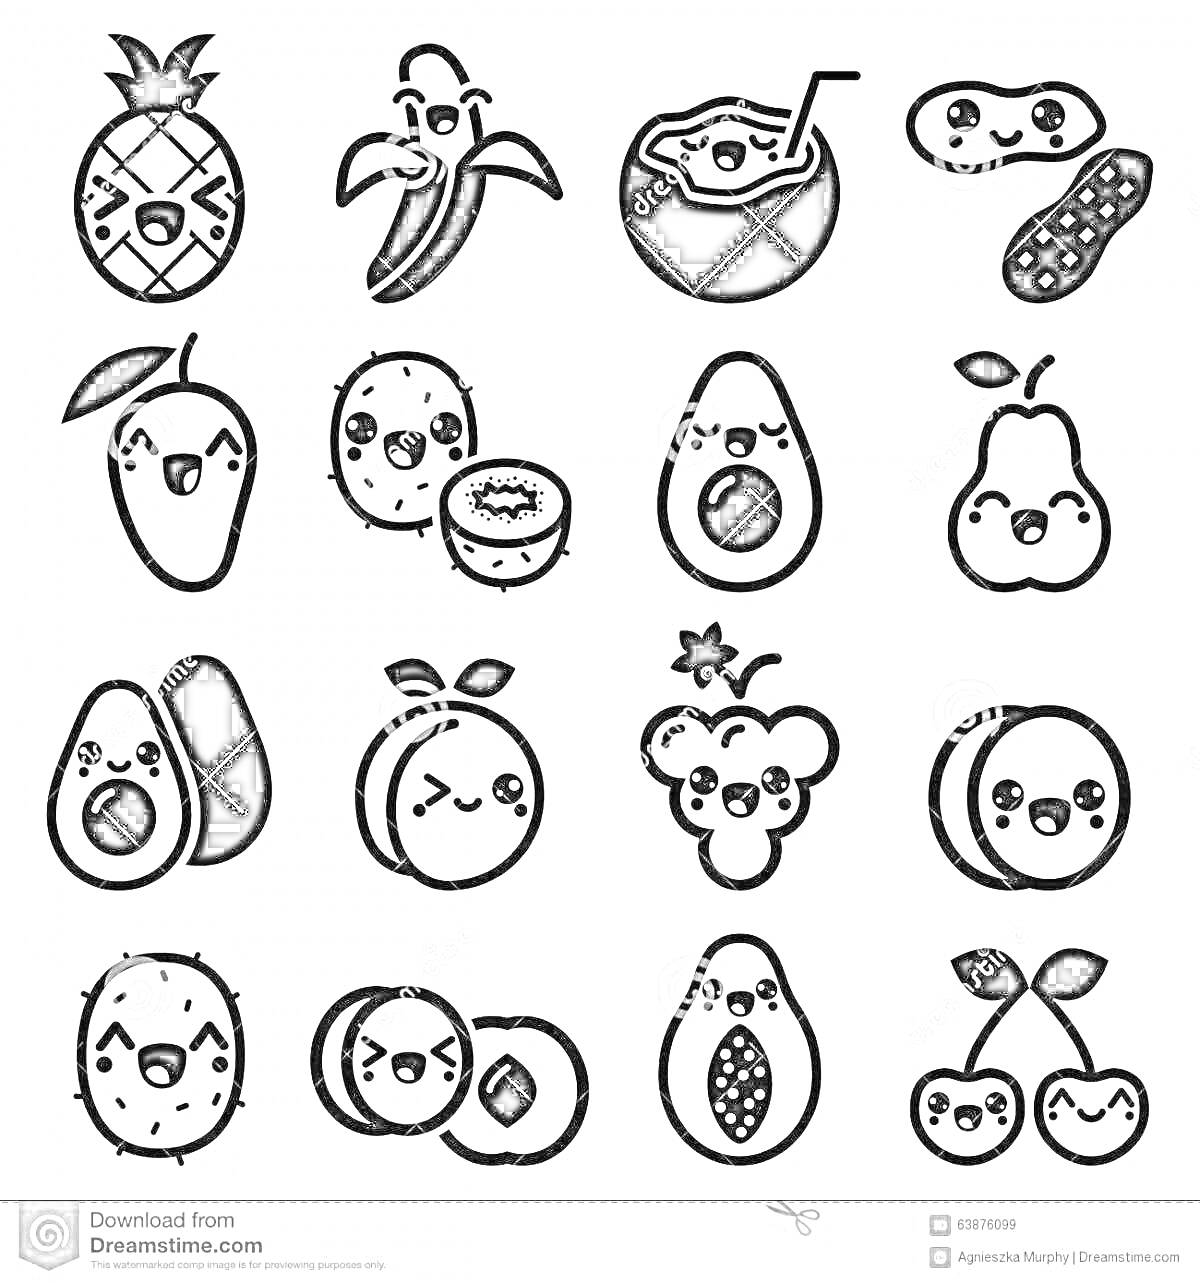 РаскраскаМилые фрукты с лицами: ананас, банан, кокос с трубочкой, арахис, манго, личи, киви, груша, авокадо, слива, личи, мишка, авокадо, личи, маракуйя, вишня